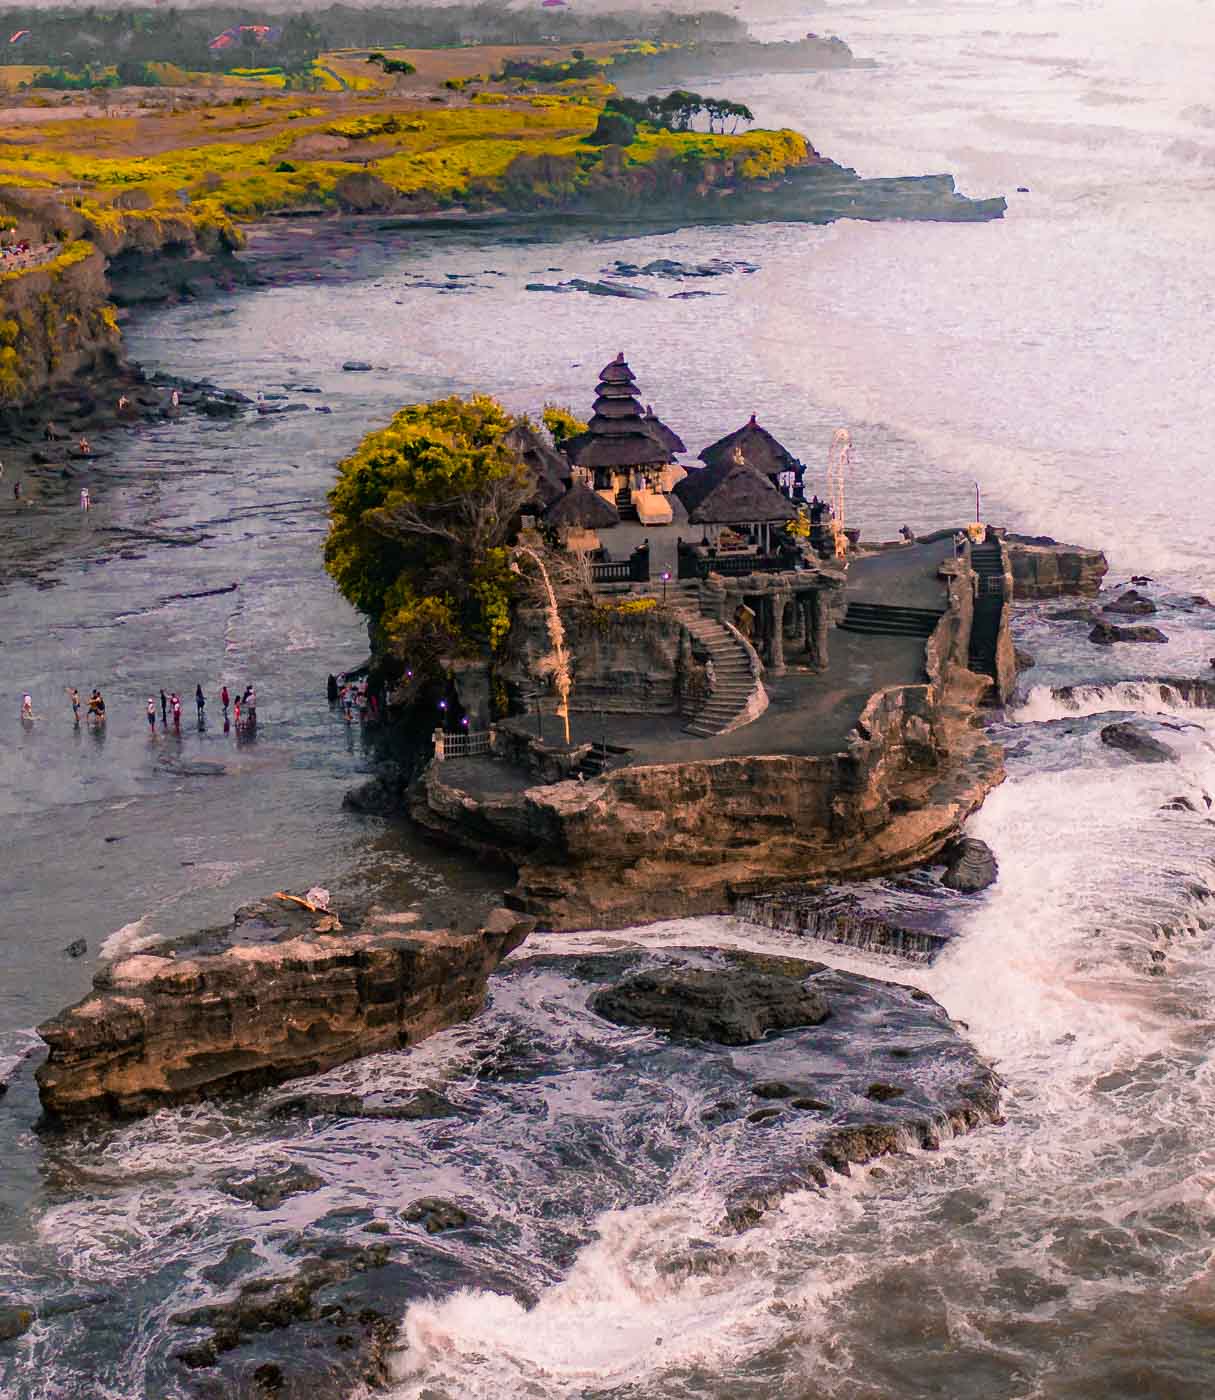 Tanah Lot Temple - Bali Itinerary